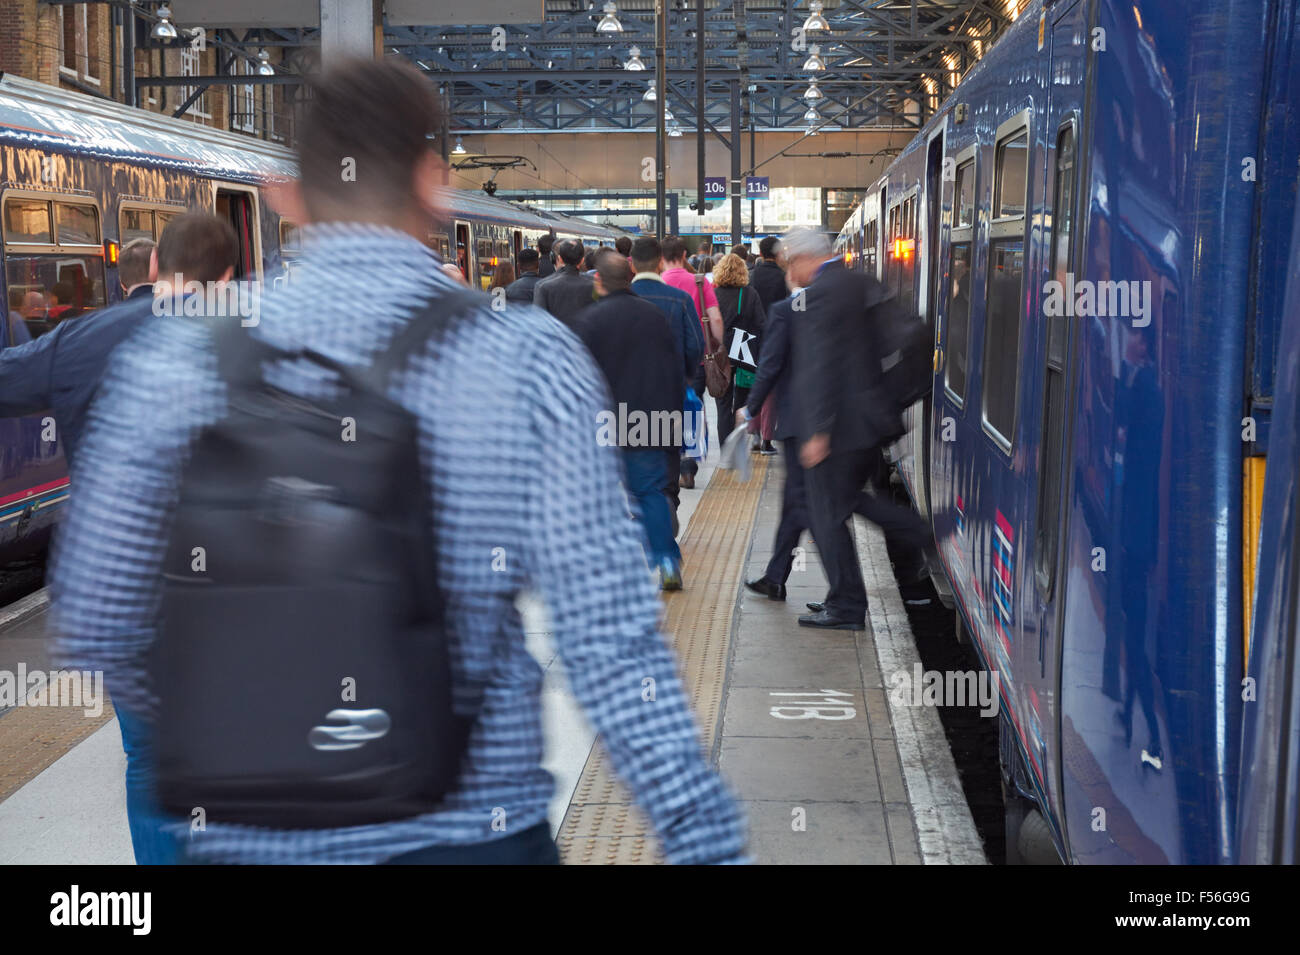 Les passagers qui quittent le train à King's Cross, la gare de Londres Angleterre Royaume-Uni UK Banque D'Images